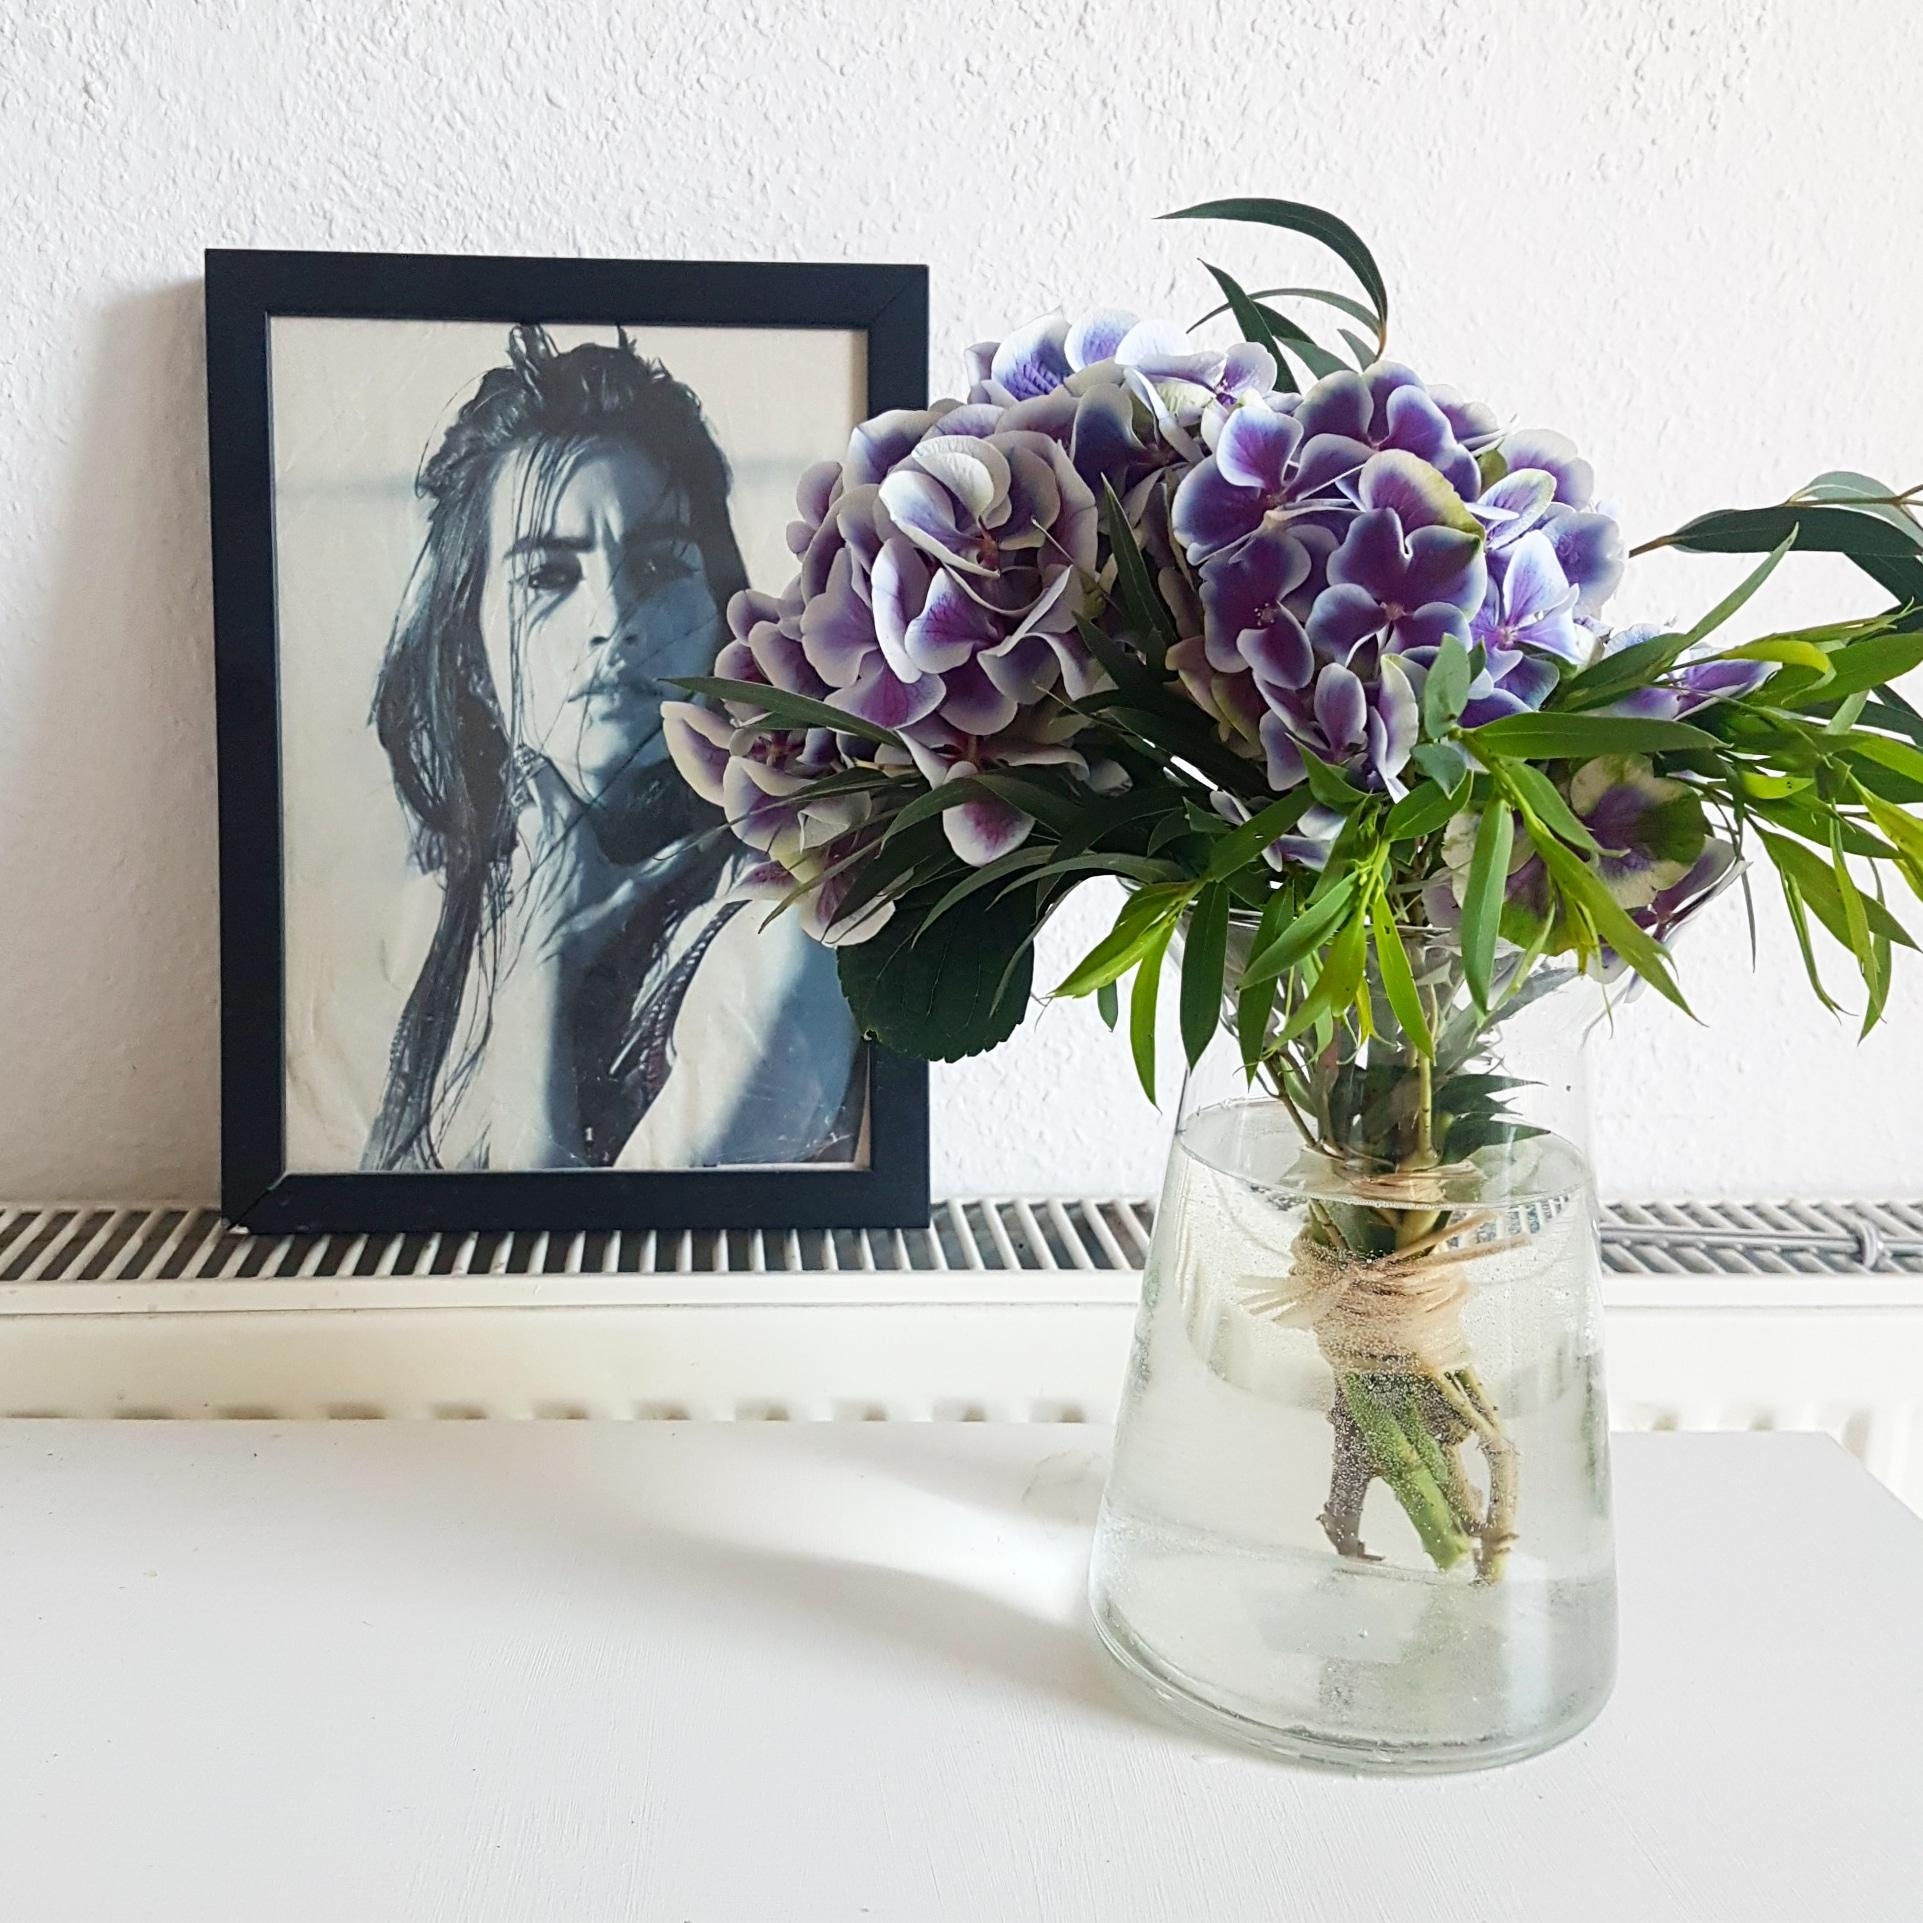 Ich liebe es frische Blumen zuhause zu haben, die machen gleich gute Laune. #hortensien #hortensienwoche #flowerpower